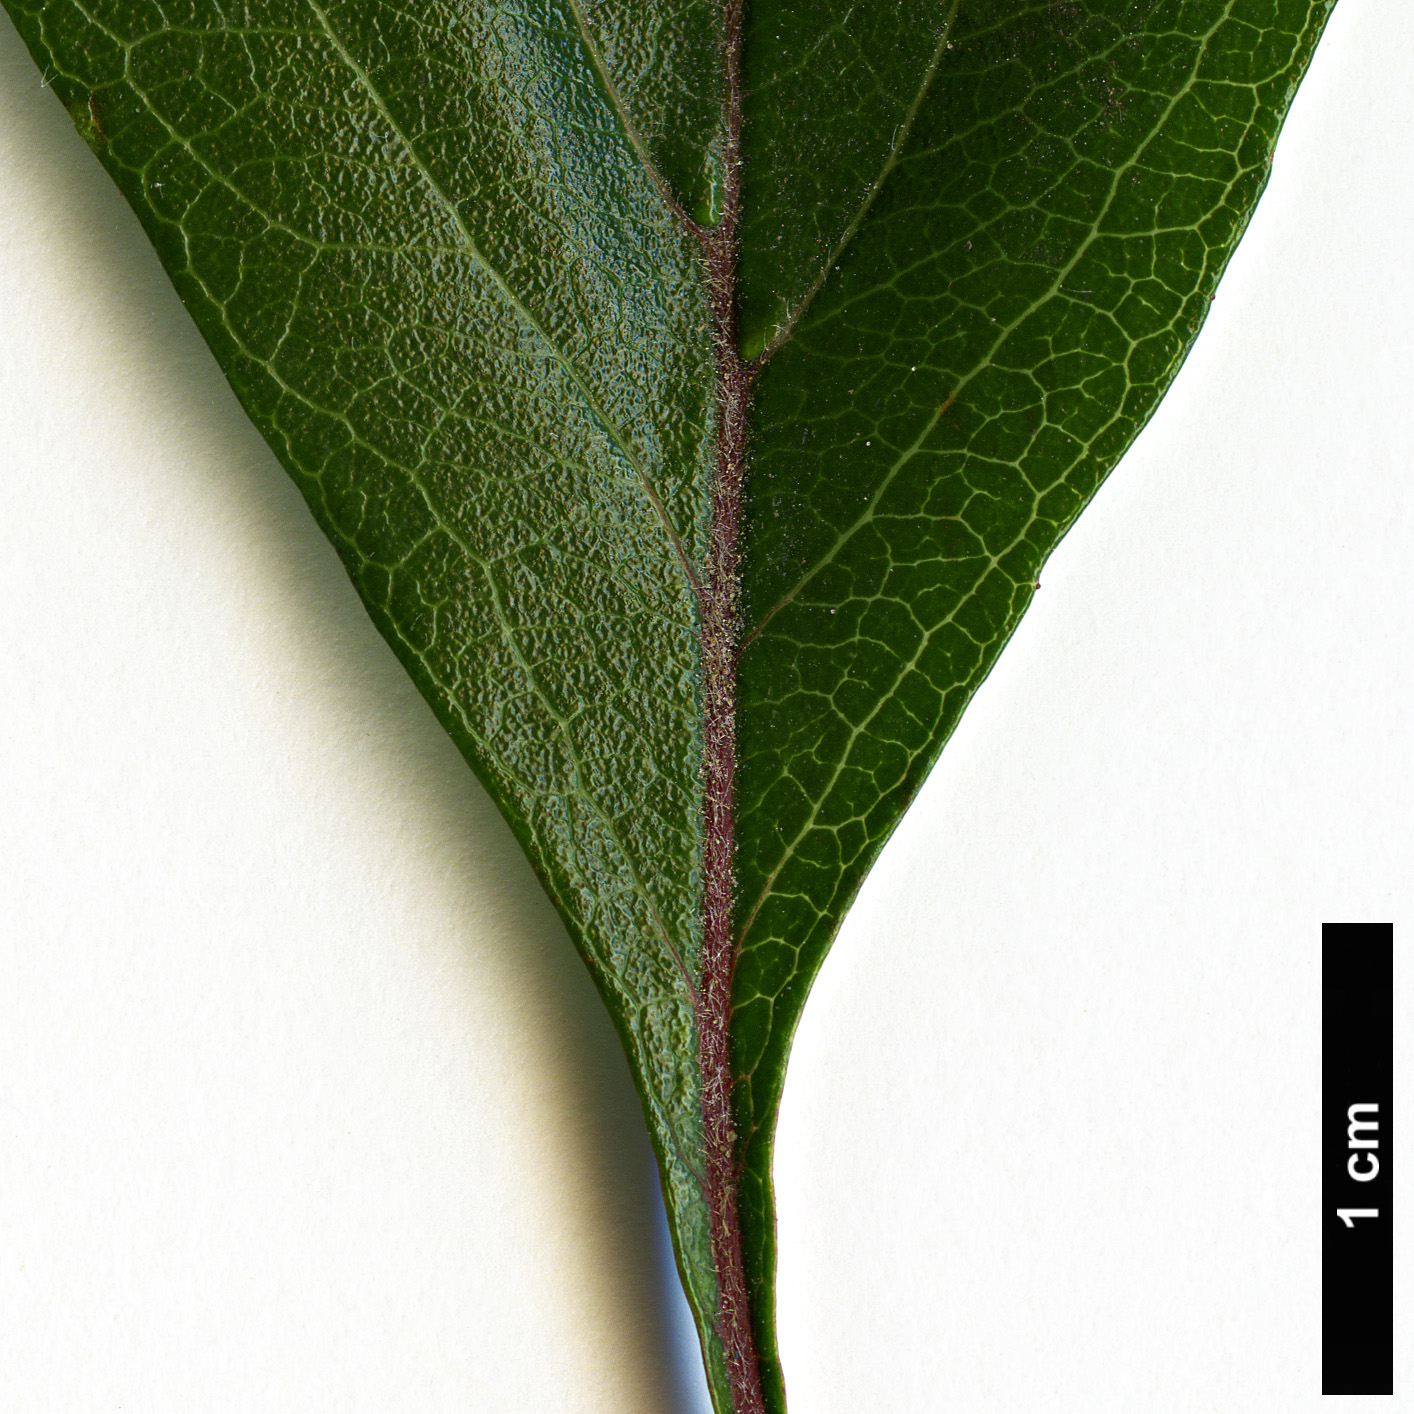 High resolution image: Family: Rosaceae - Genus: Crataegus - Taxon: aestivalis